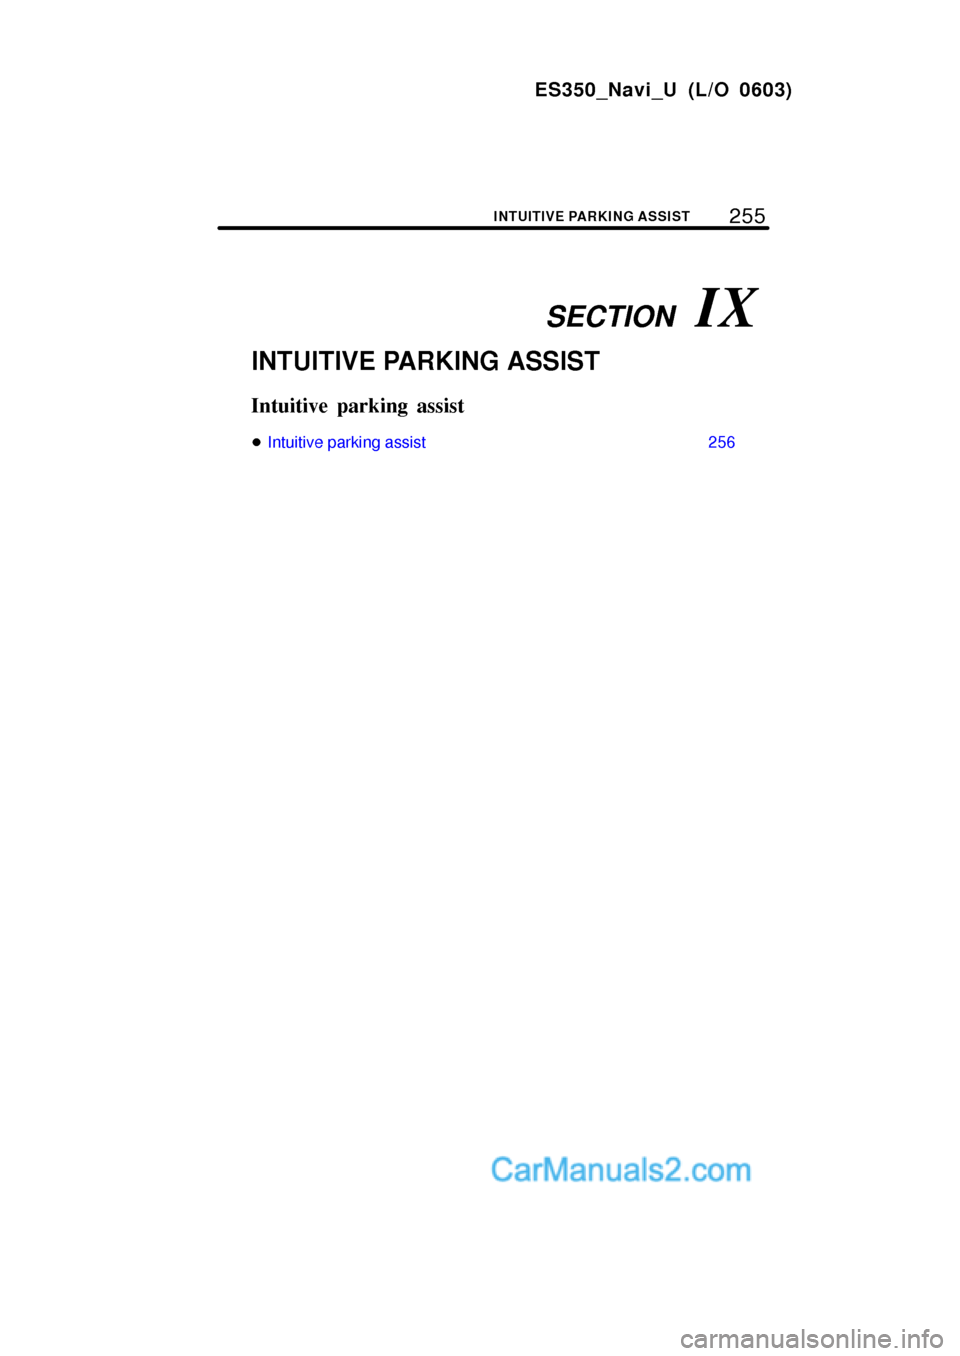 Lexus ES350 2007  Intuitive Parking Assist SECTION   IX
255
ES350_Navi_U (L/O 0603)
INTUITIVE PARKING ASSIST
INTUITIVE PARKING ASSIST
Intuitive parking assist
Intuitive parking assist 256  